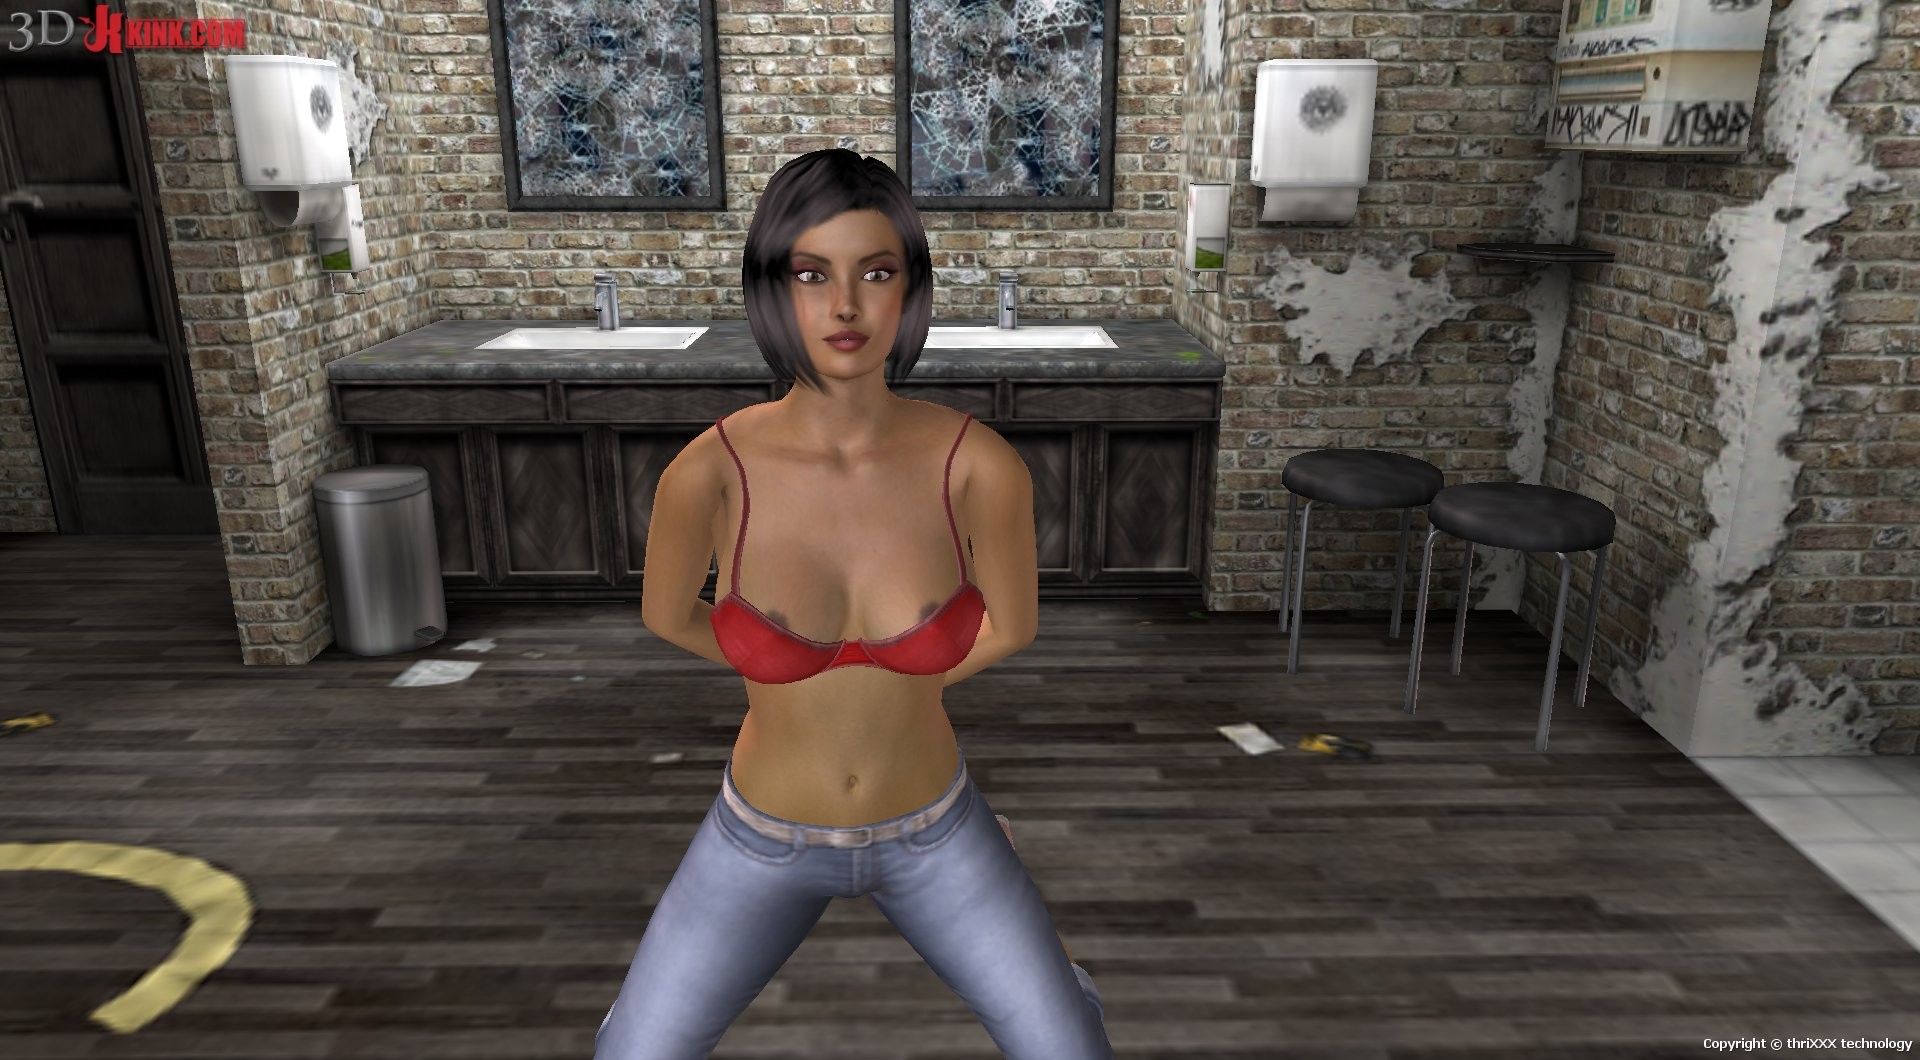 Action sexuelle bdsm chaude créée dans un jeu sexuel 3d fétichiste virtuel !
 #69568961